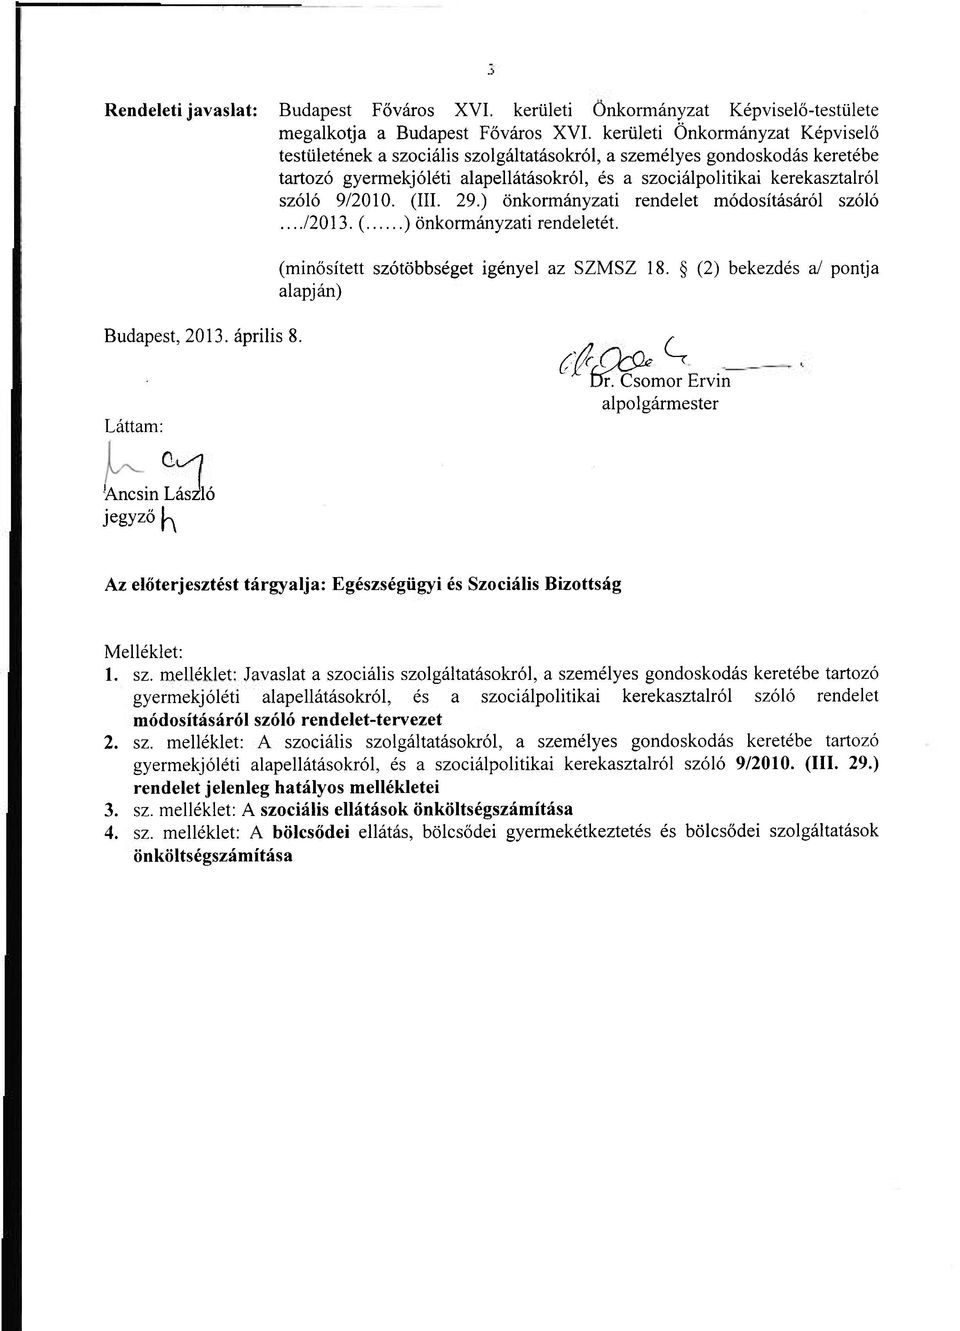 ) önkrmányzati rendelet módsításáról szóló.../2013. ( ) önkrmányzati rendeletét. (minősített szótöbbséget igényel az SZMSZ 18. (2) bekezdés a/ pntja alapján) Budapest, 2013. április 8.